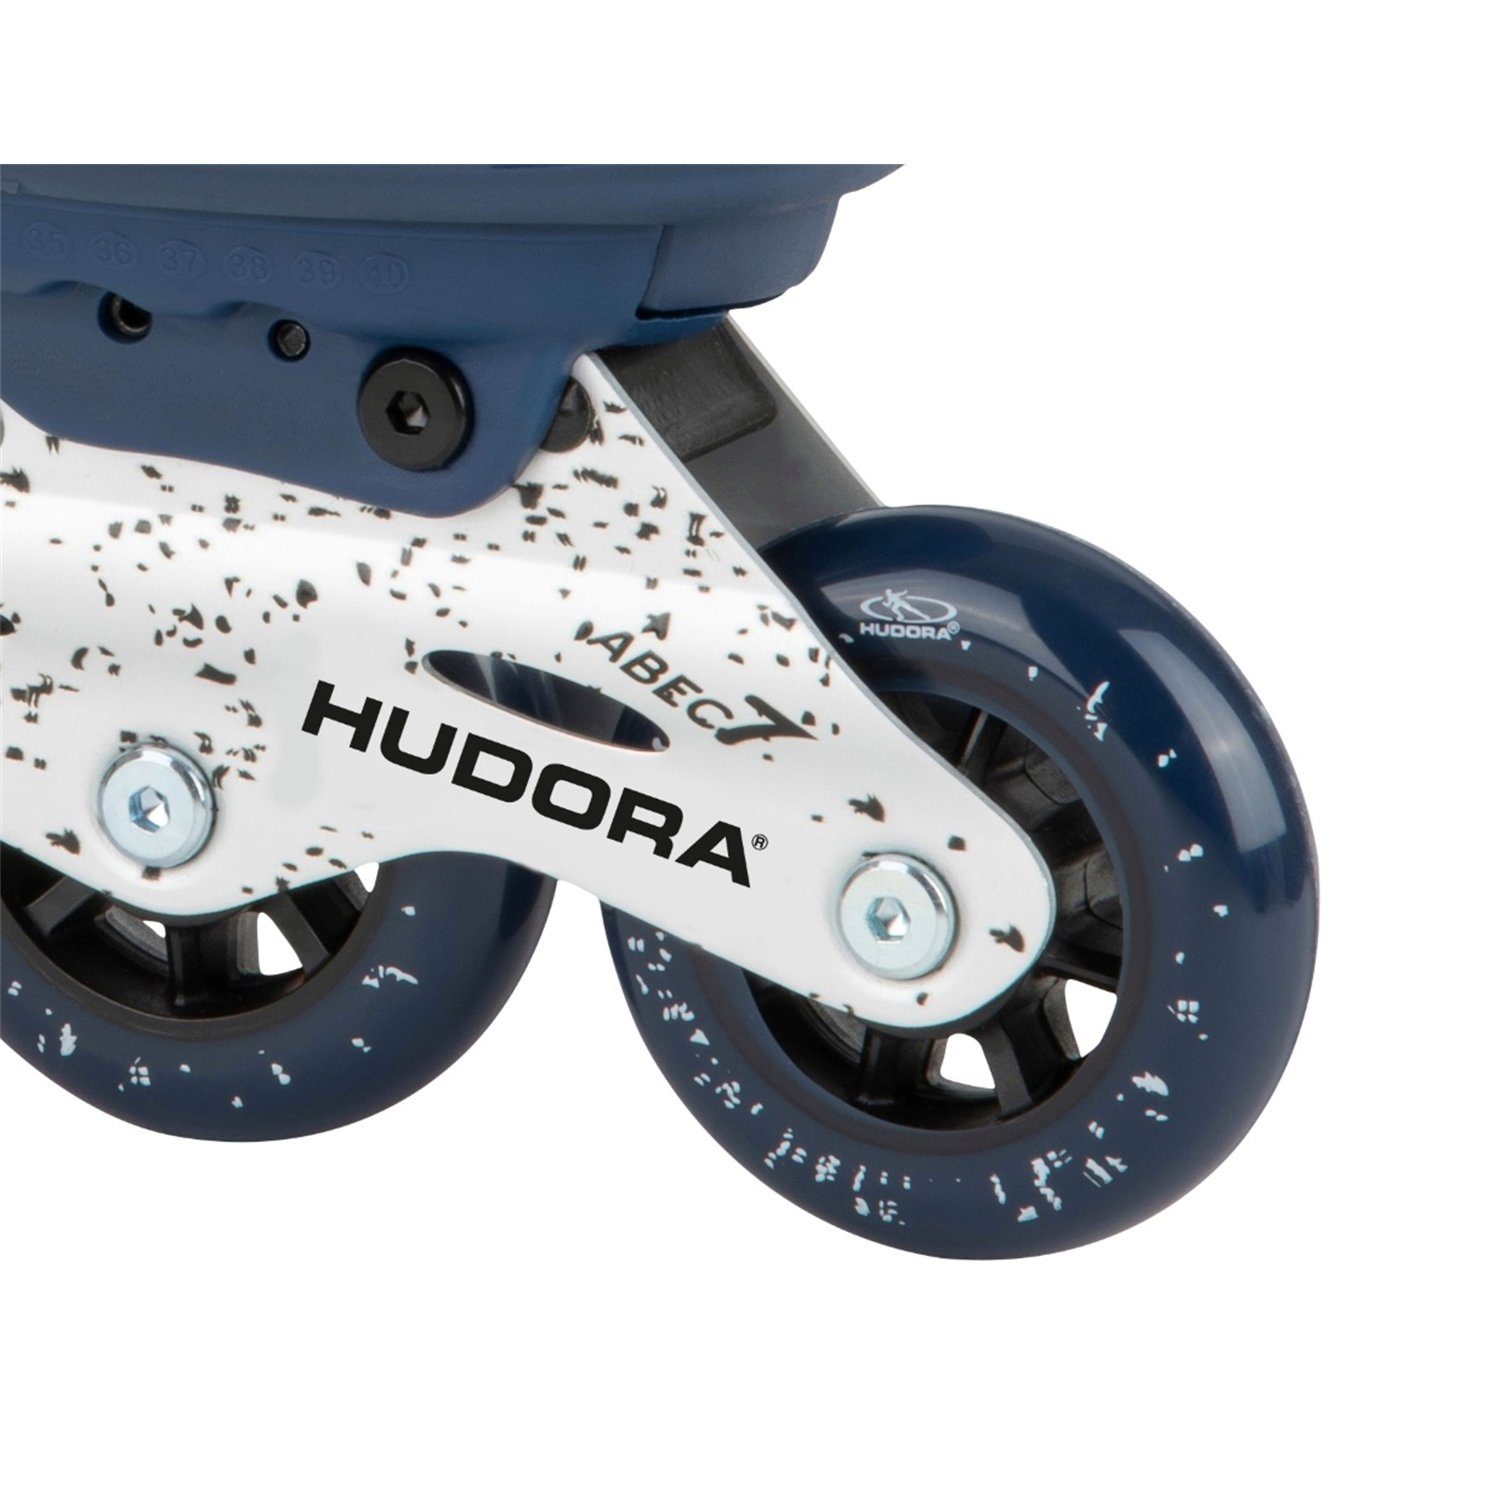 Hudora Skates deep Scooter 28450 Gr.29-34 Comfort, Blue Inline